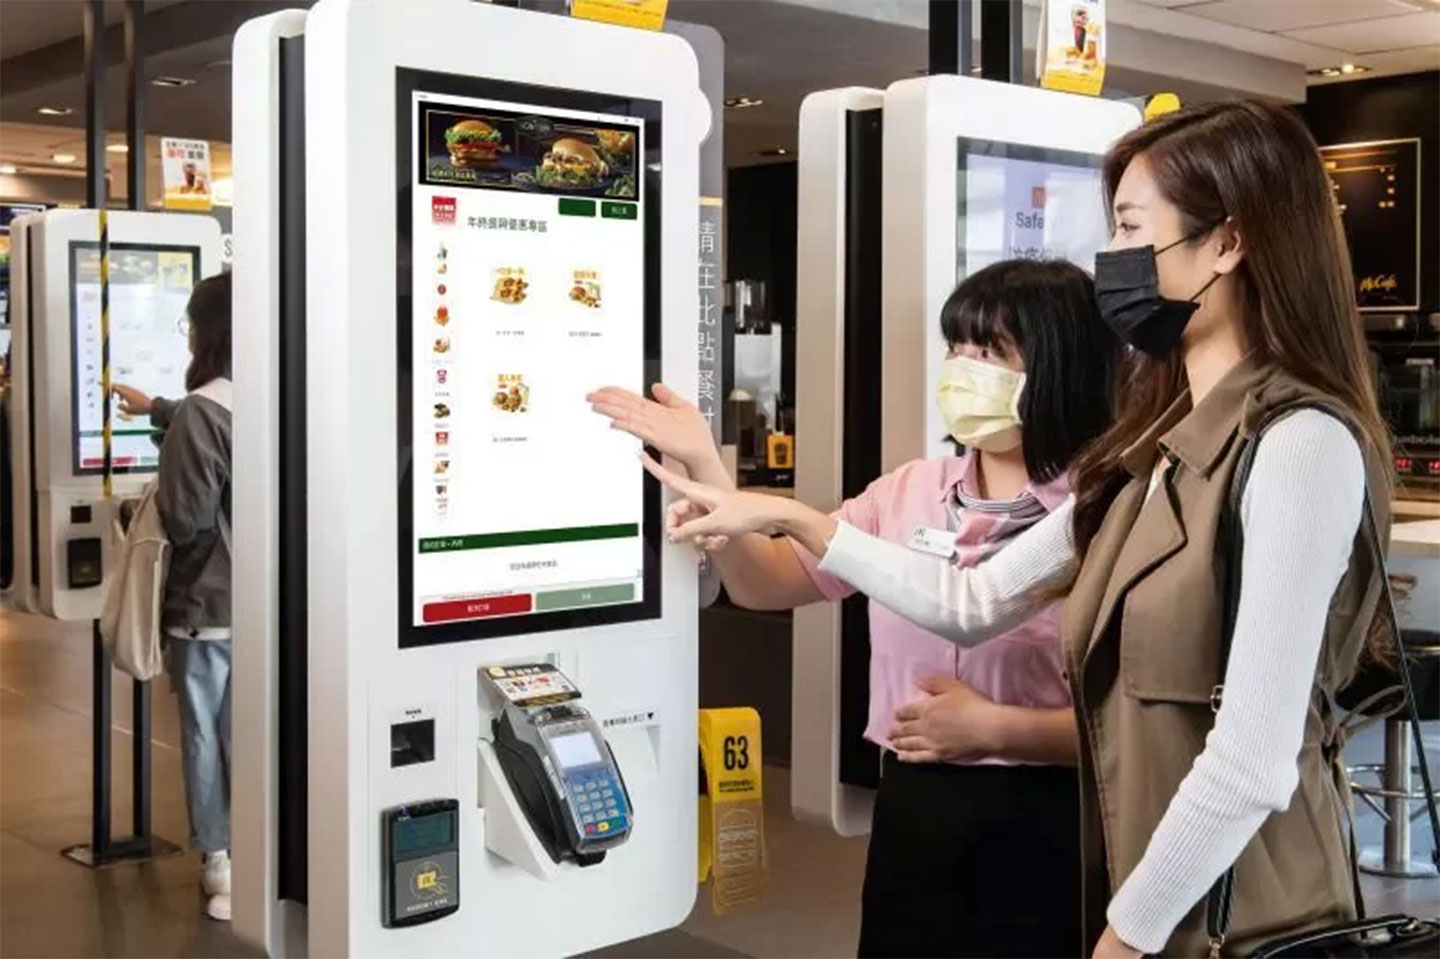 知名的速食者麥當勞也有愈來愈多店家採用自助式的觸控點餐機，提供消費者便利性（圖片來源：台灣麥當勞）。